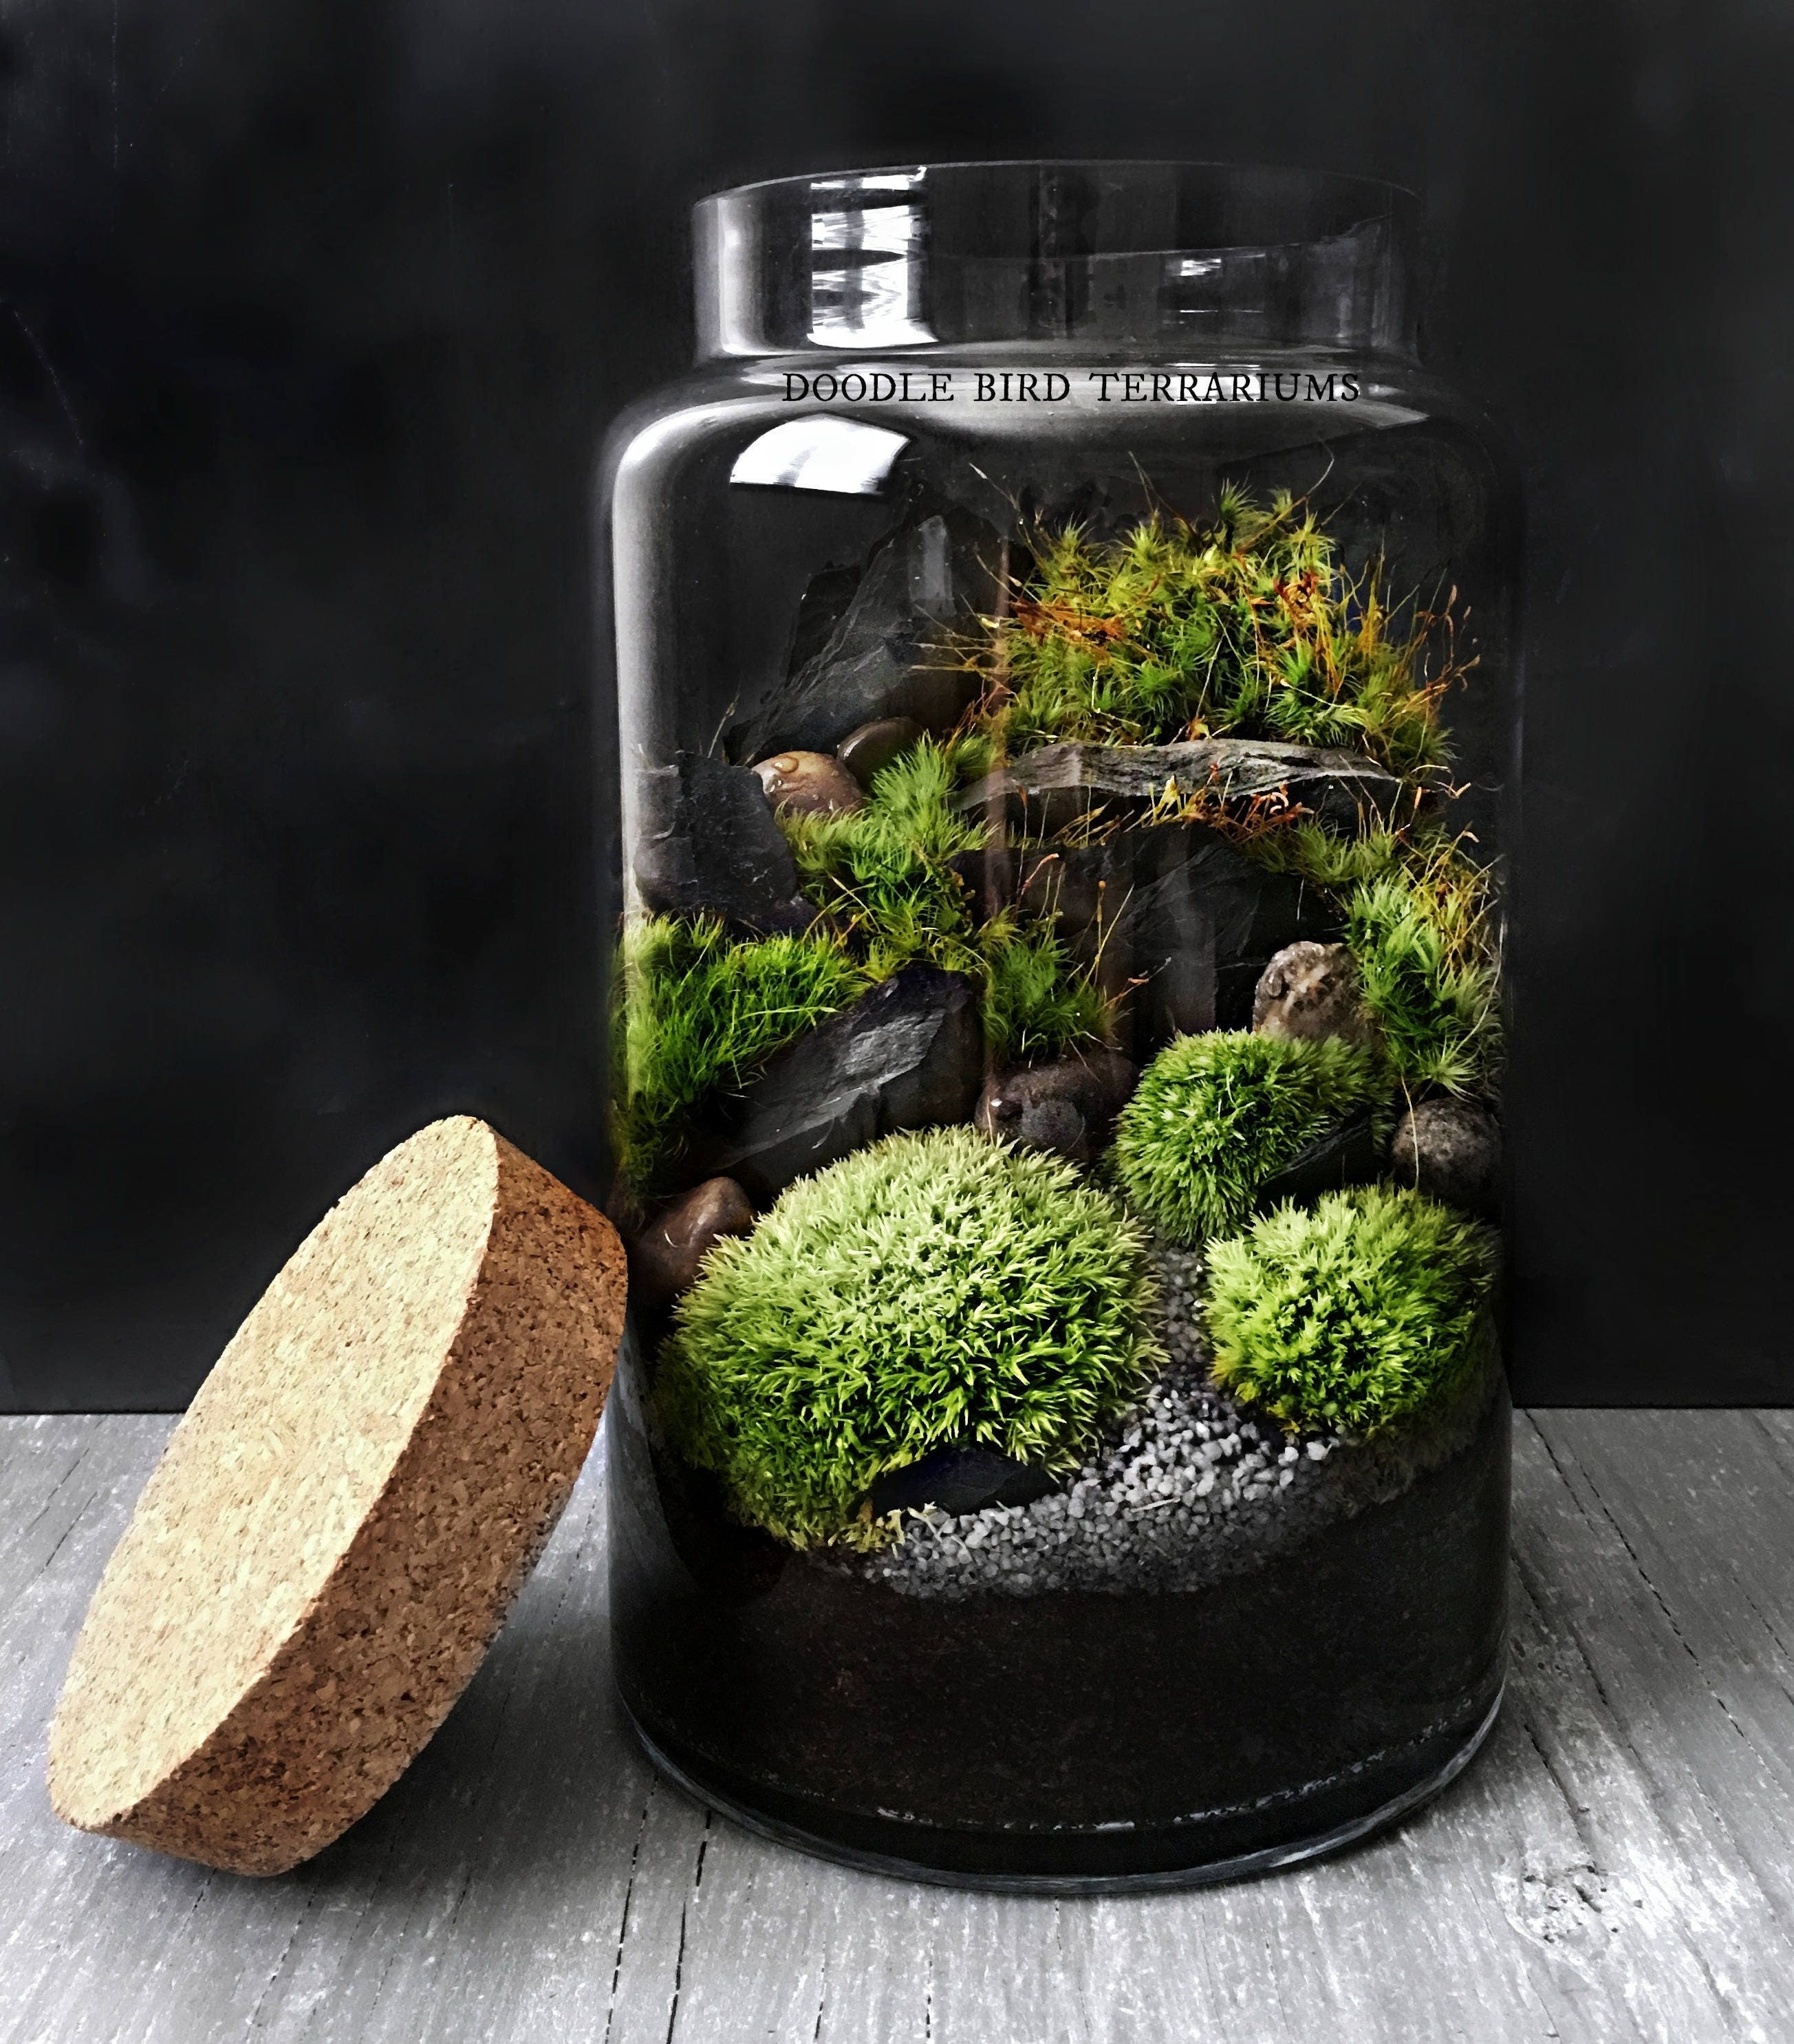 moss for terrarium ? : r/terrariums